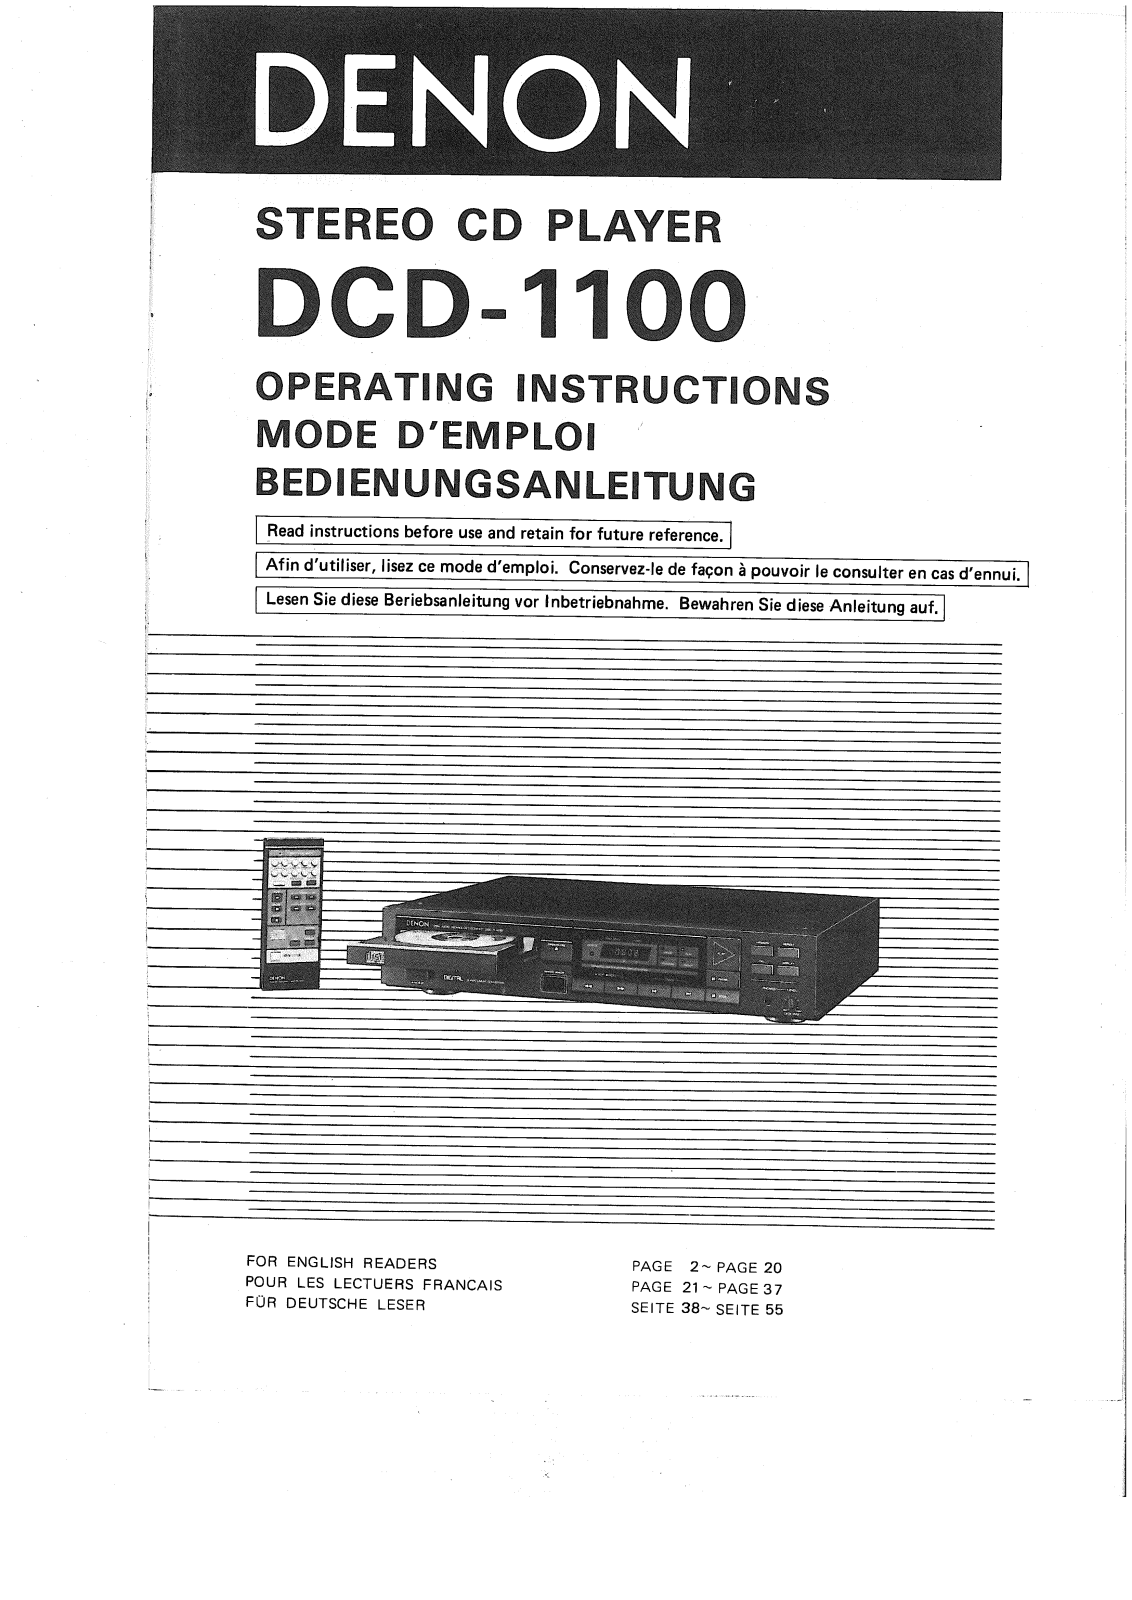 Denon DCD-1100 Owner's Manual